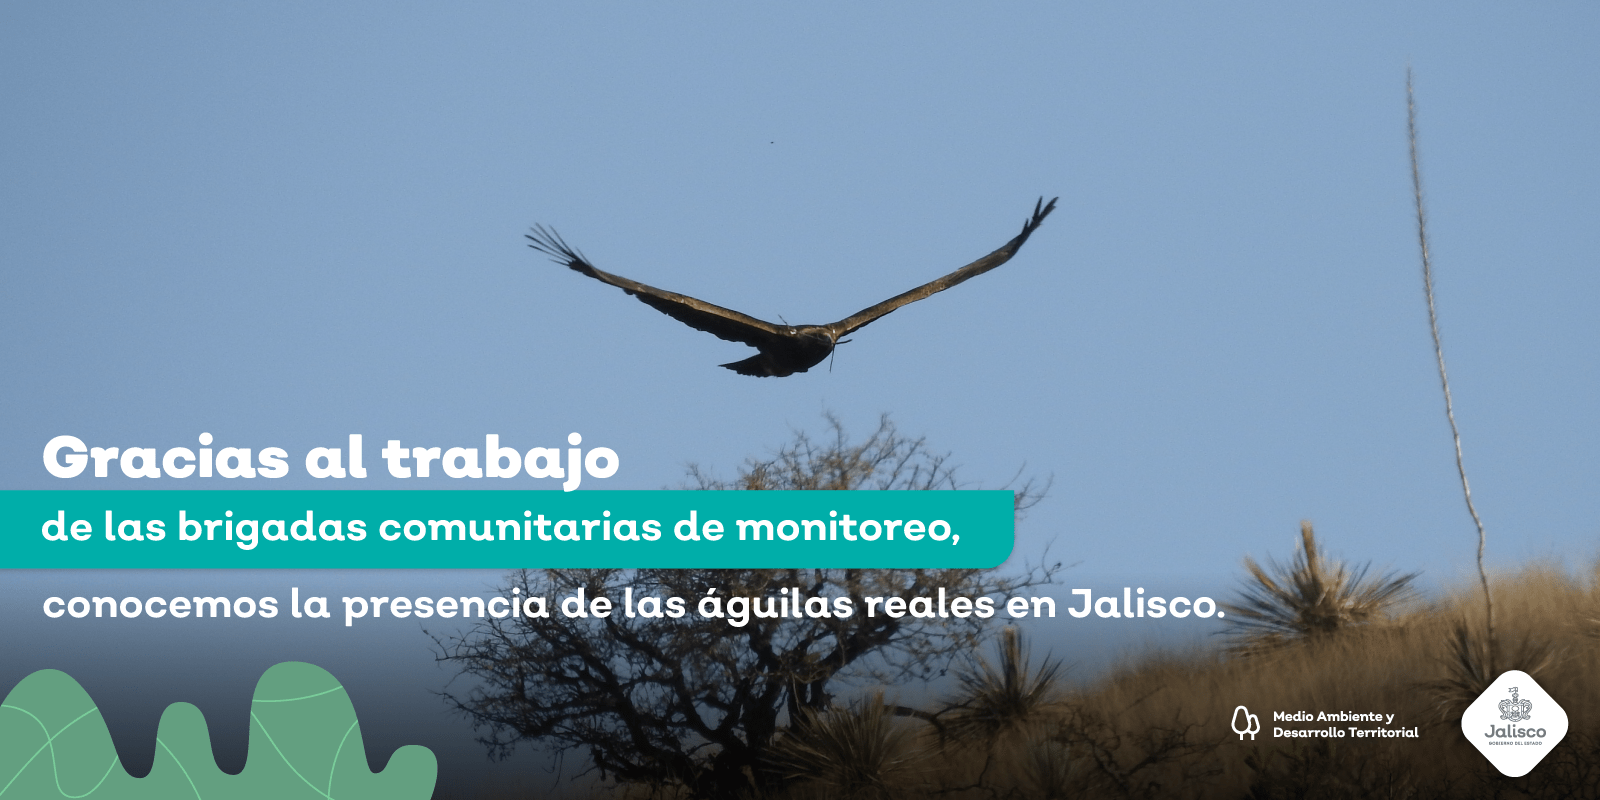 Registramos el nacimiento exitoso de dos águilas reales en Jalisco, resultado de las buenas acciones ambientales